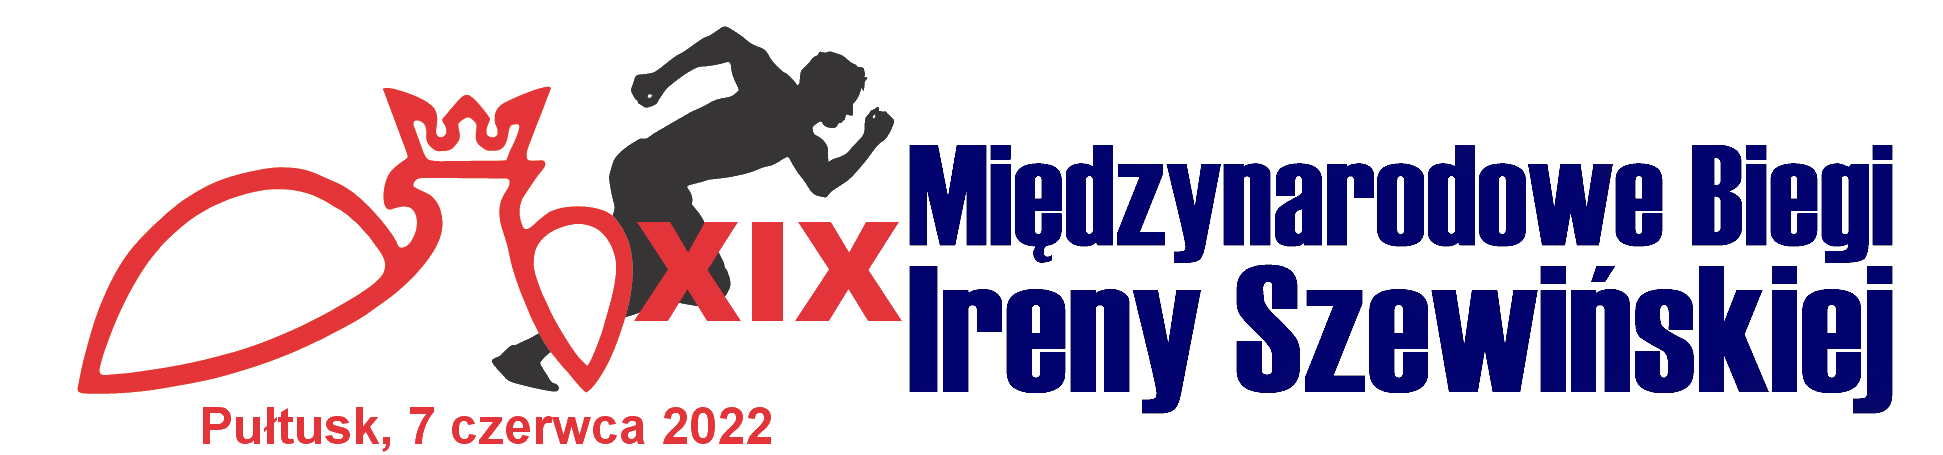 XIX Biegi I. Szewińskiej logo